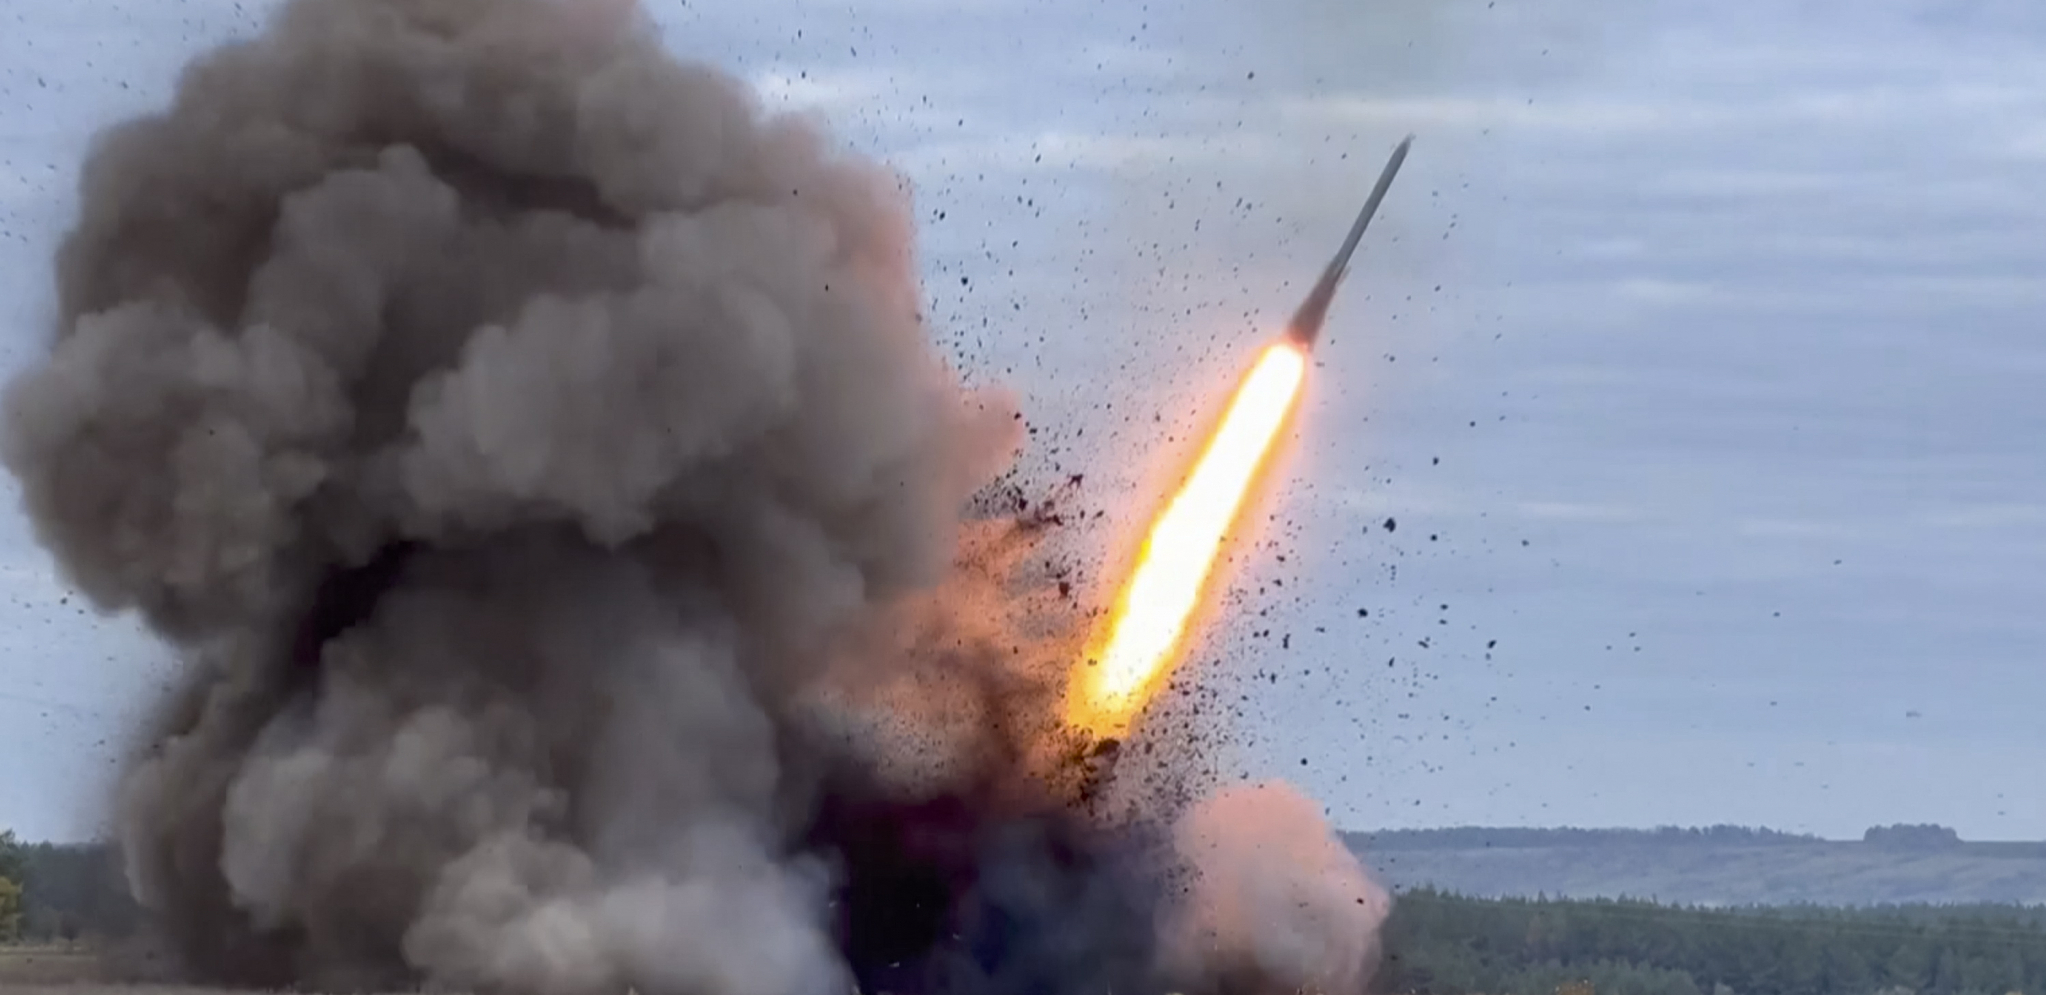 UKRAJINA UDARA NA RUSKU TERITORIJU Ispaljena raketa, pa onda usledio napad dronova